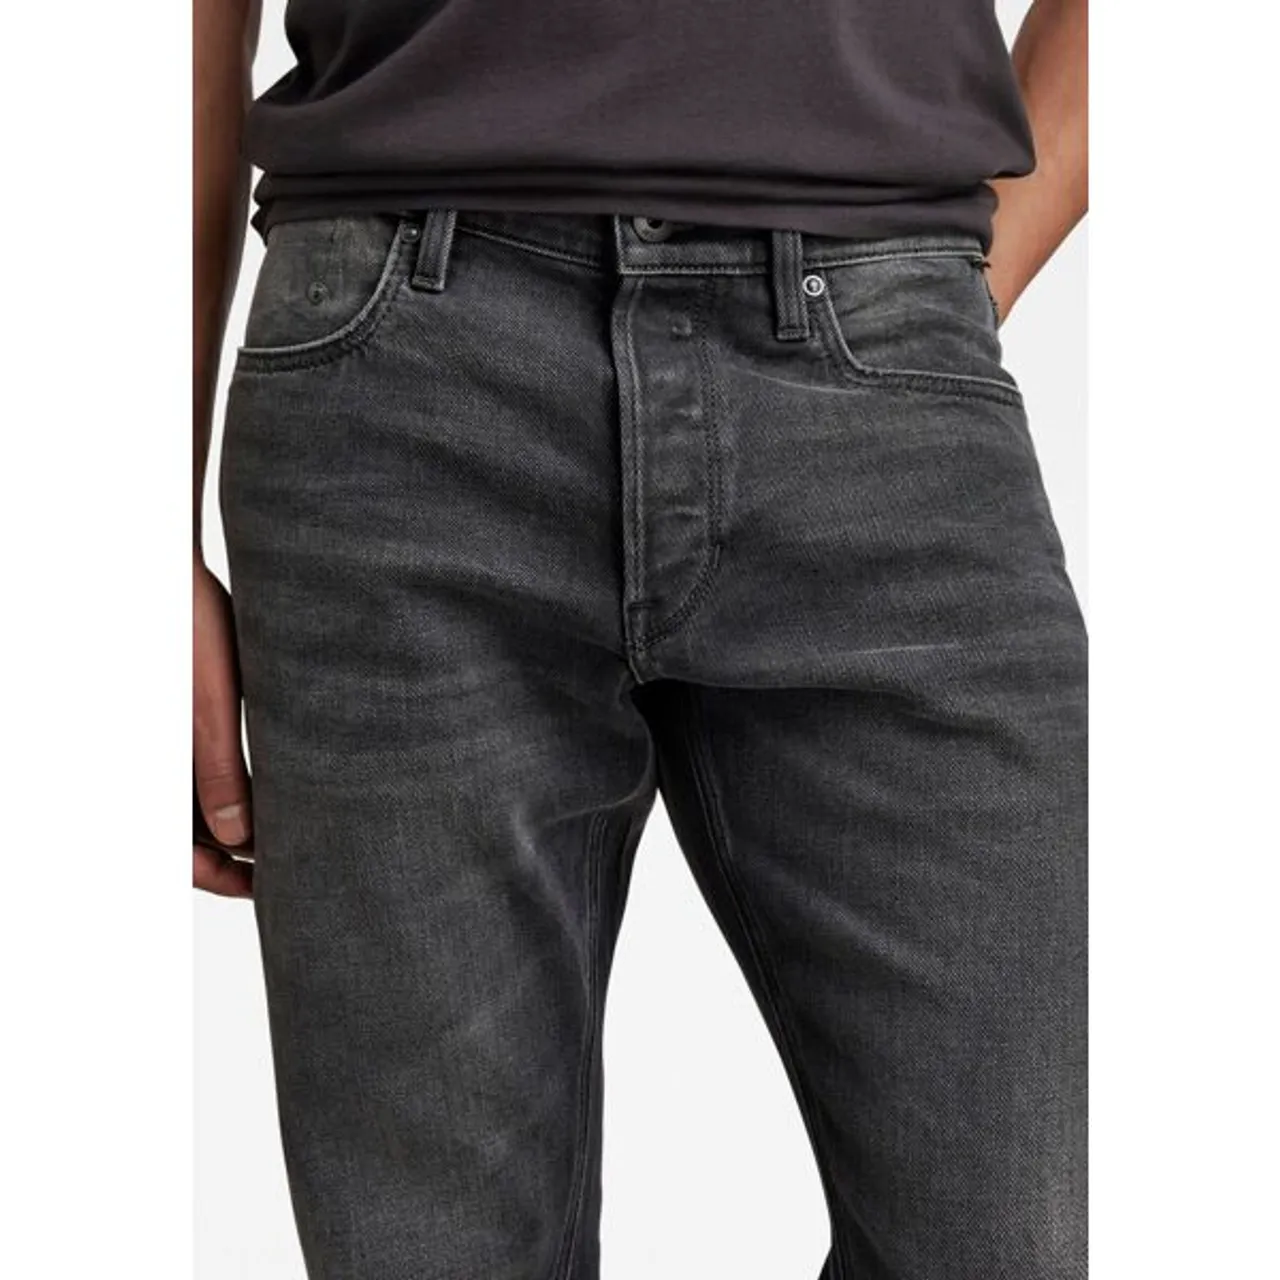 Straight-Jeans G-STAR RAW "Mosa Straight" Gr. 32, Länge 32, schwarz (worn black) Herren Jeans Straight Fit